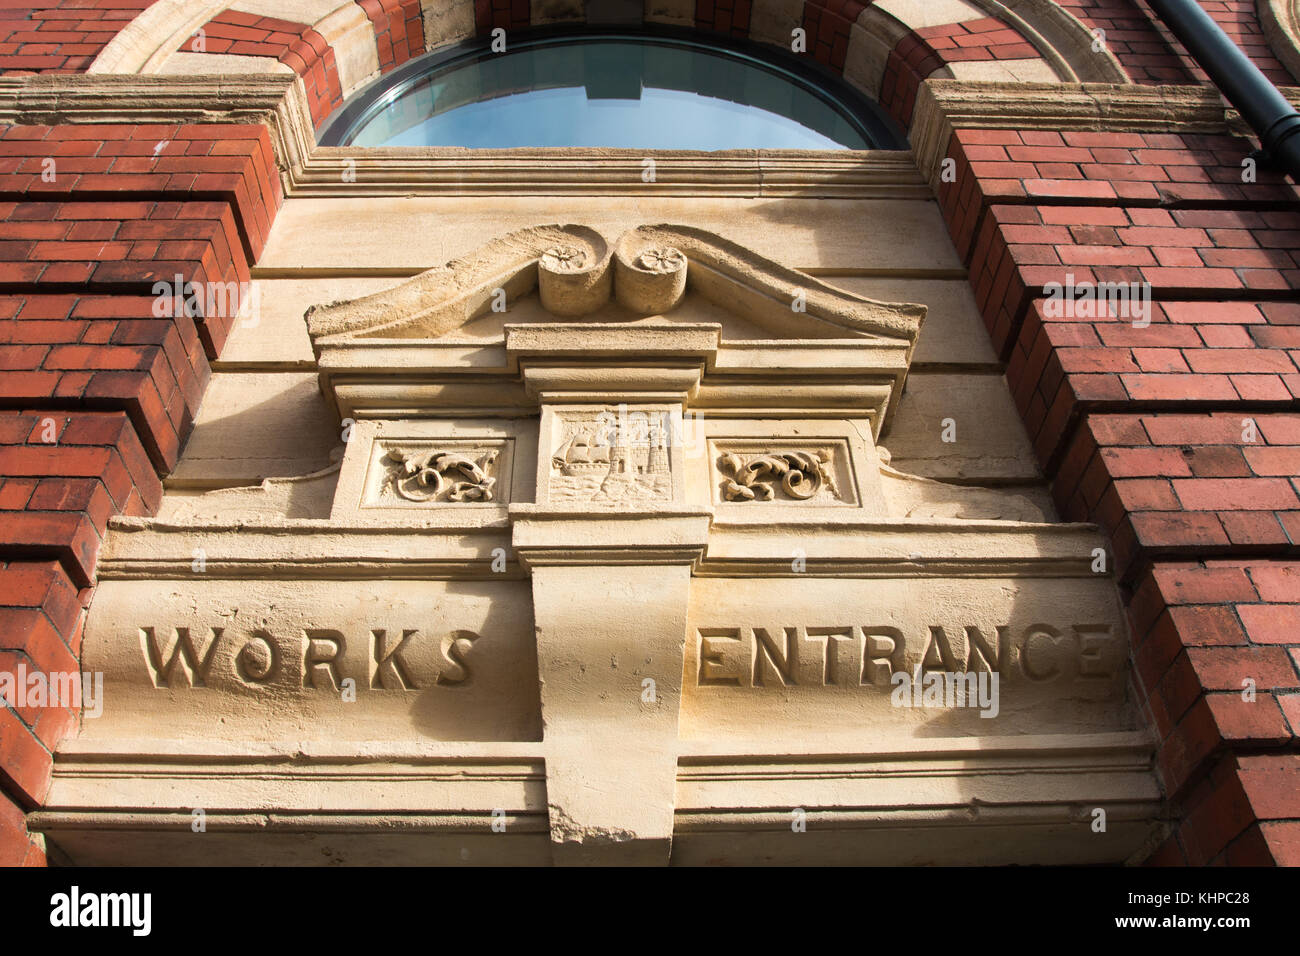 BRISTOL, UK: Works Entrance Stock Photo